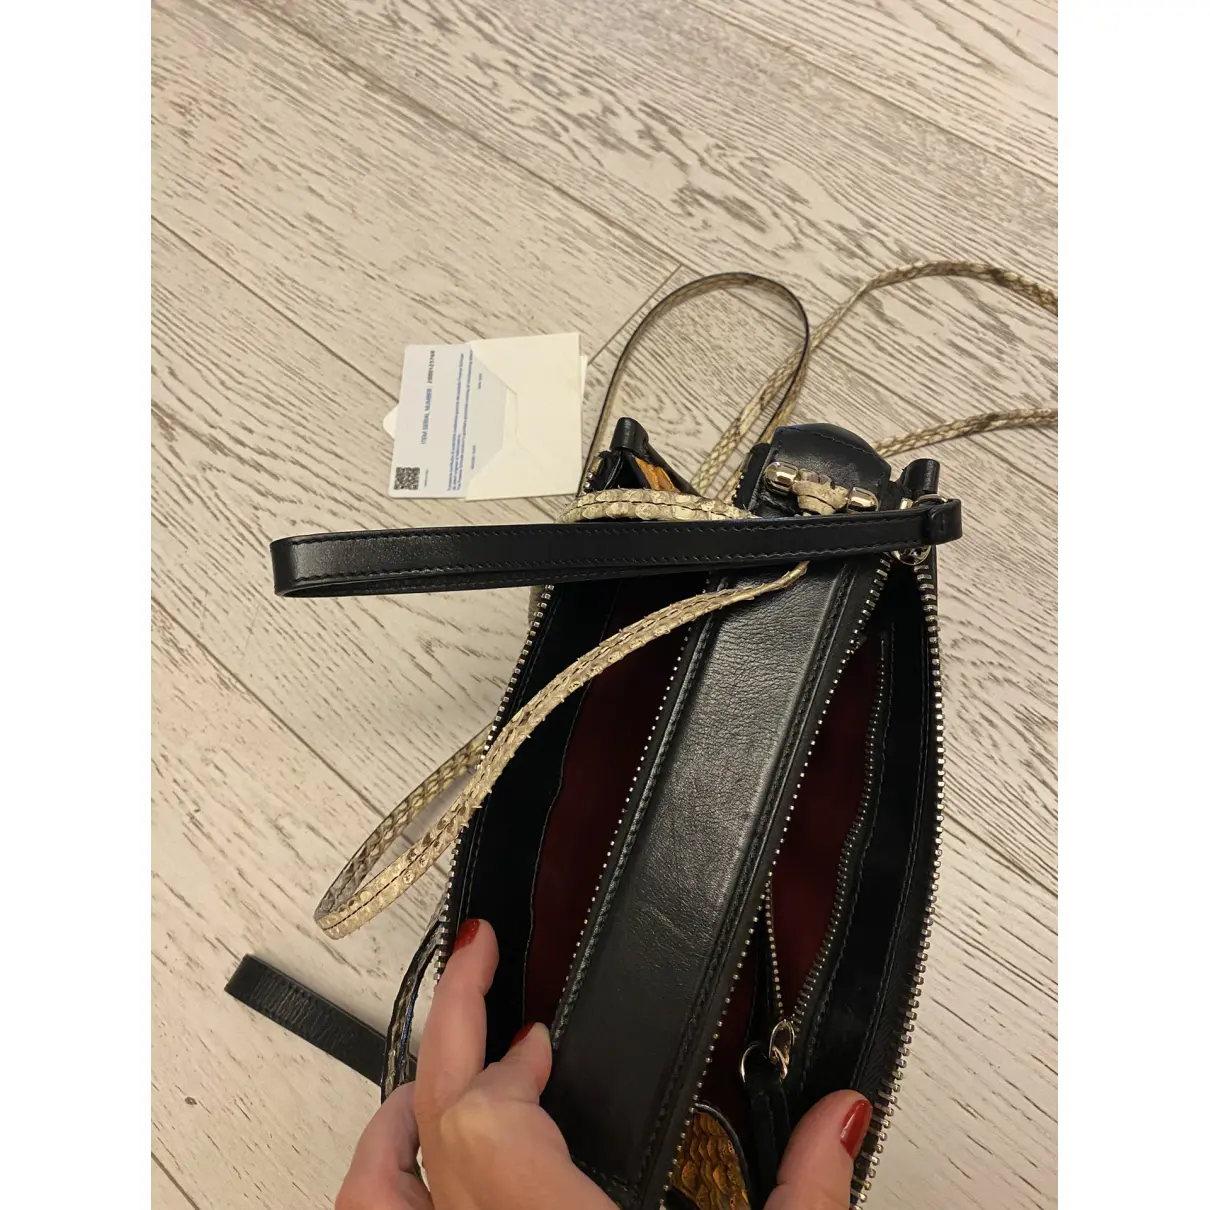 Luxury Proenza Schouler Handbags Women